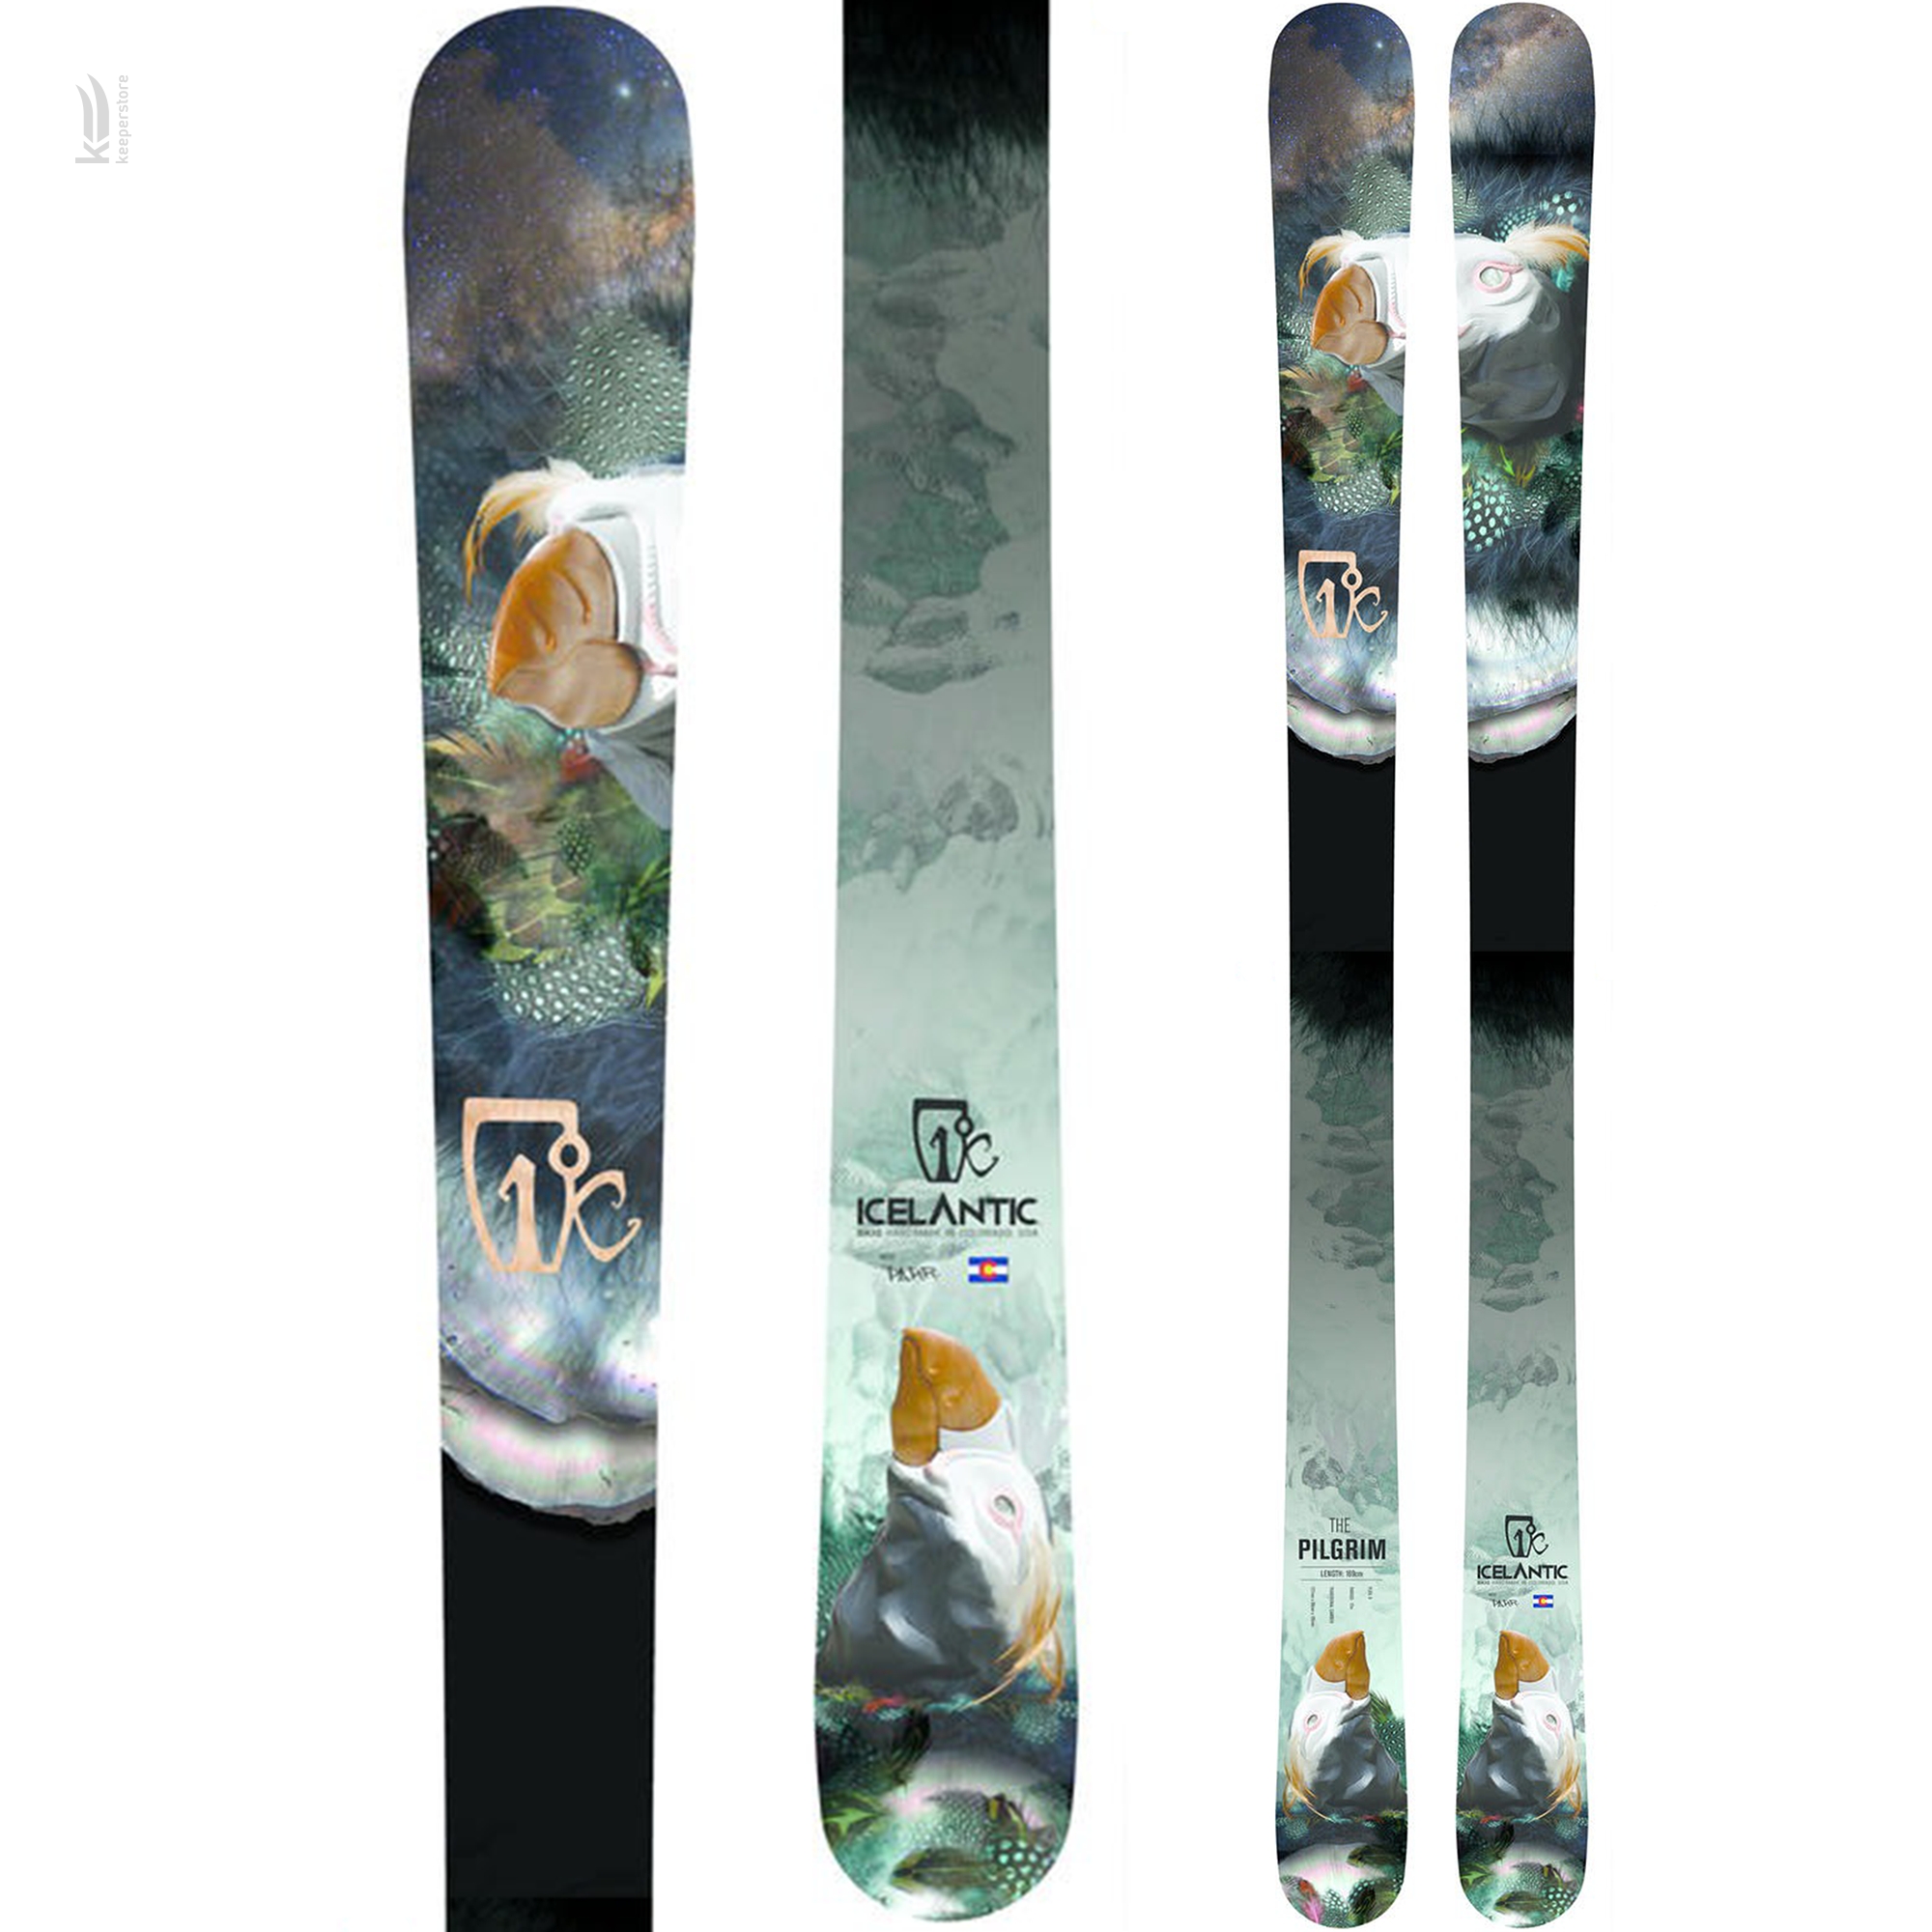 Лыжи для новичков Icelantic Pilgrim 2014/2015 169cm